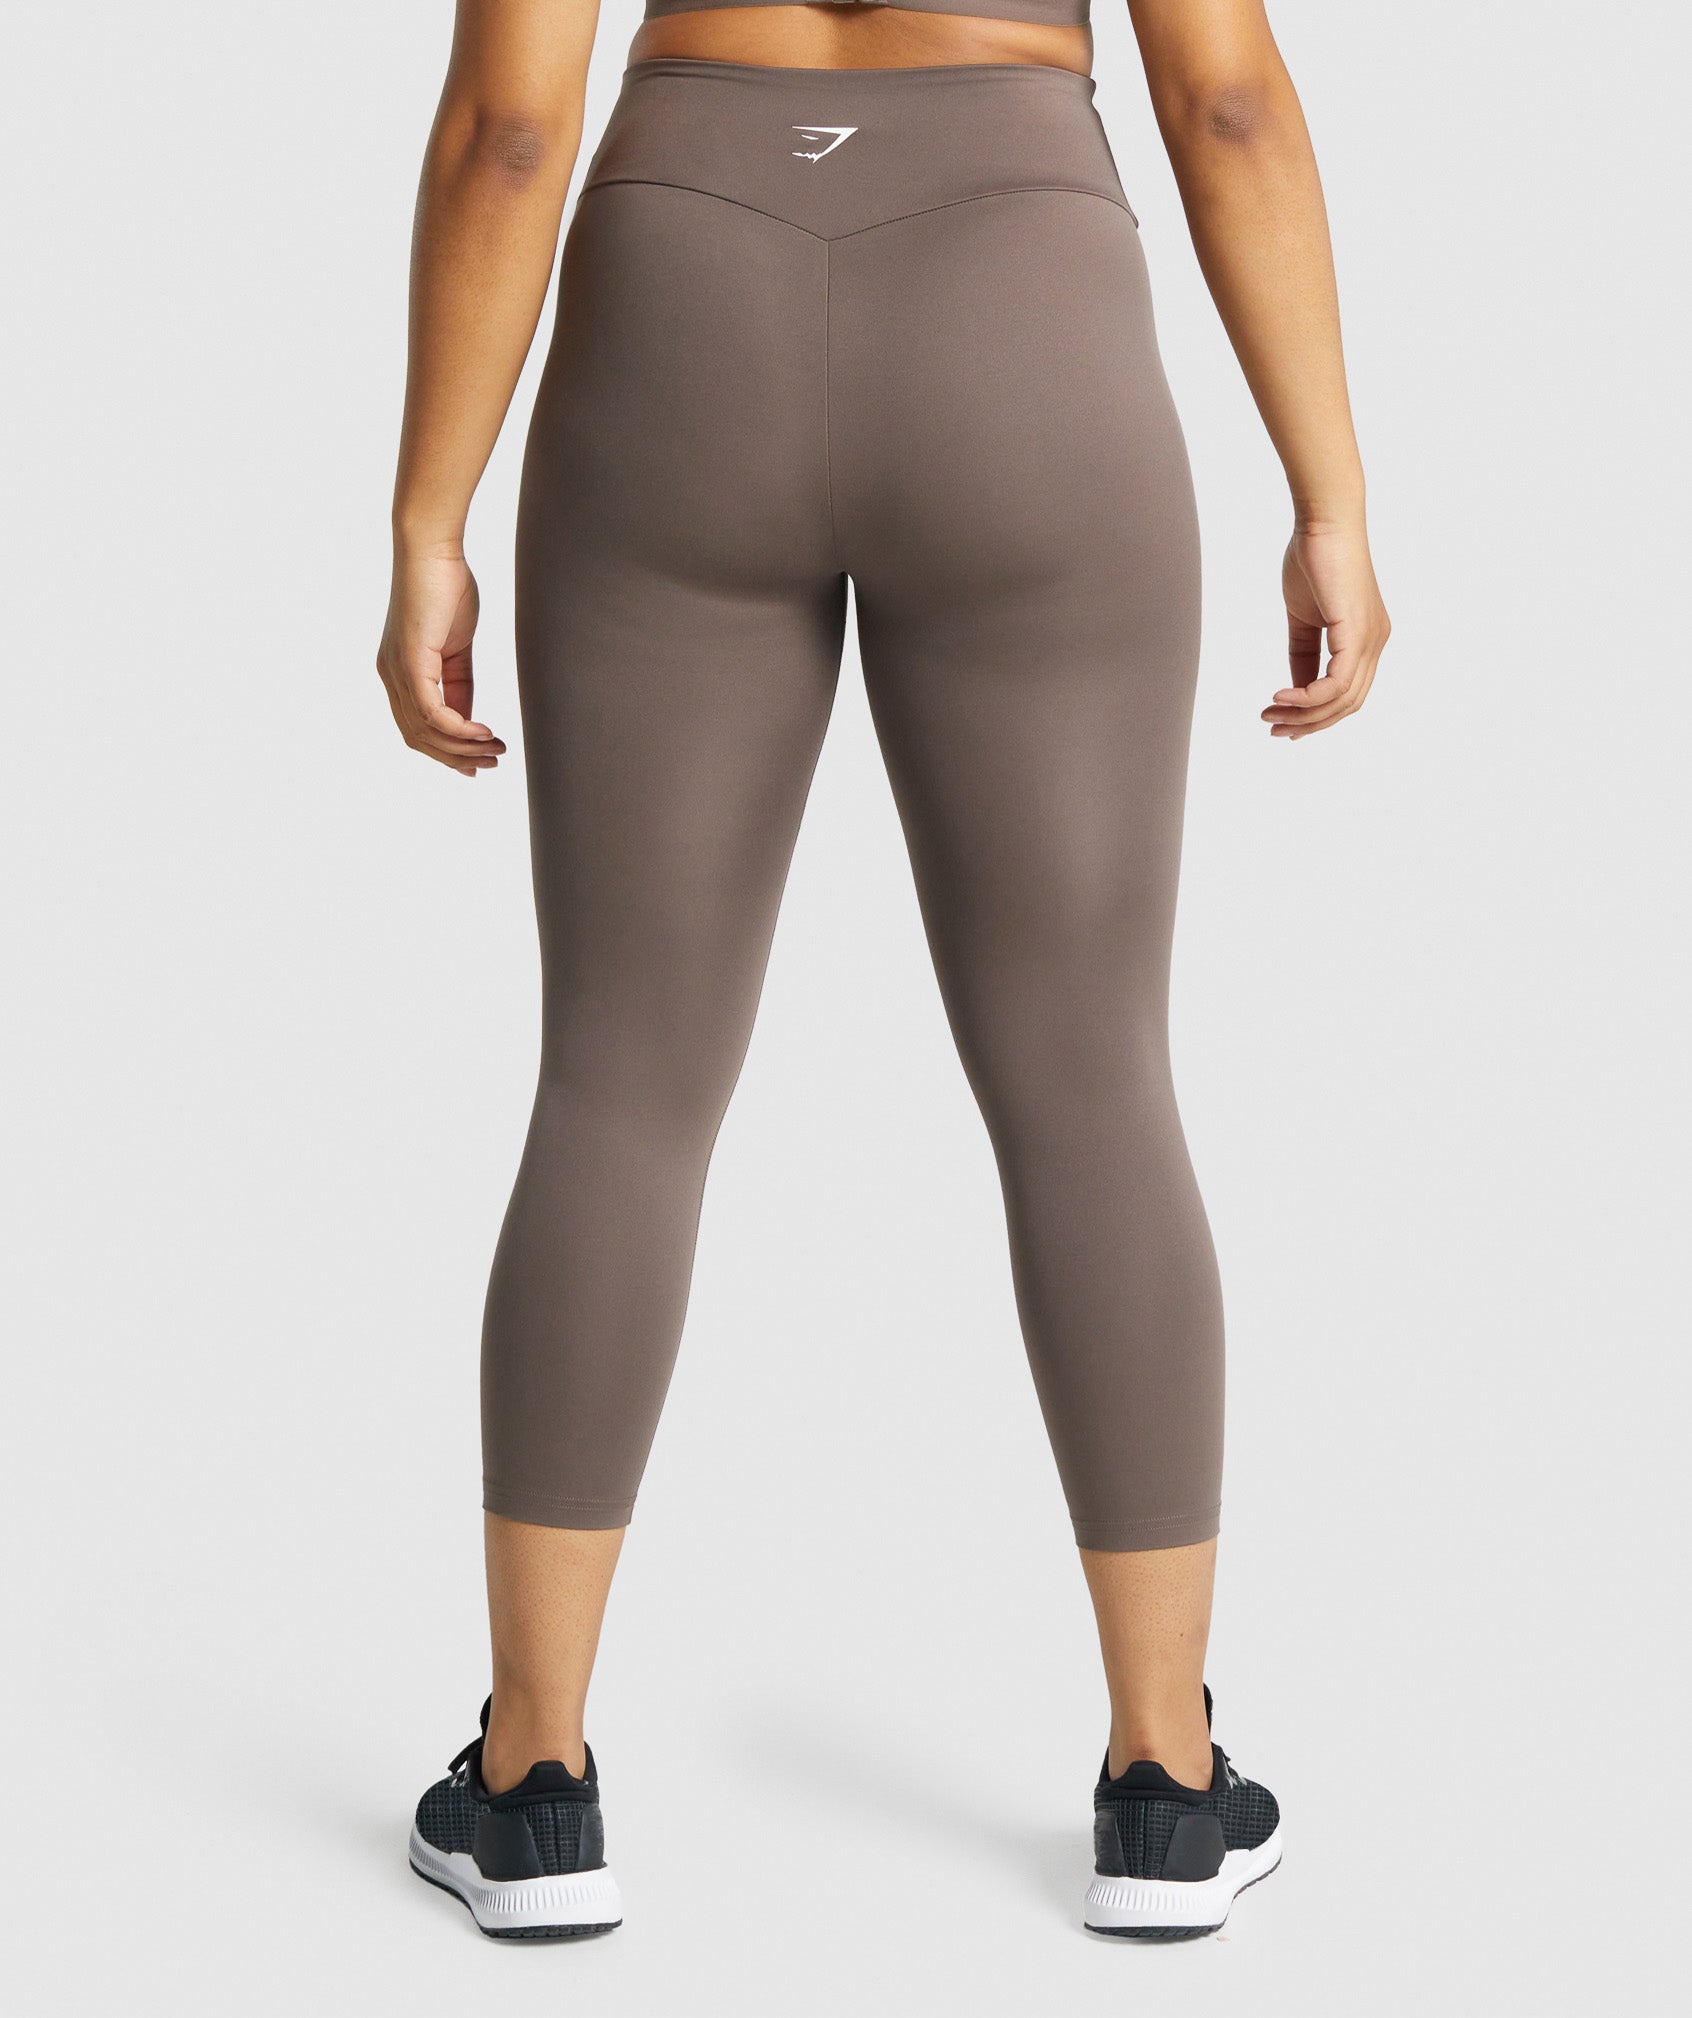 AHS True Pants for Women Short Sport Capri Leggines for Gym Workout for  Girls for Women |Women 3/4th Cotton Plain Capri 3/4 Capris Leggings for  Women